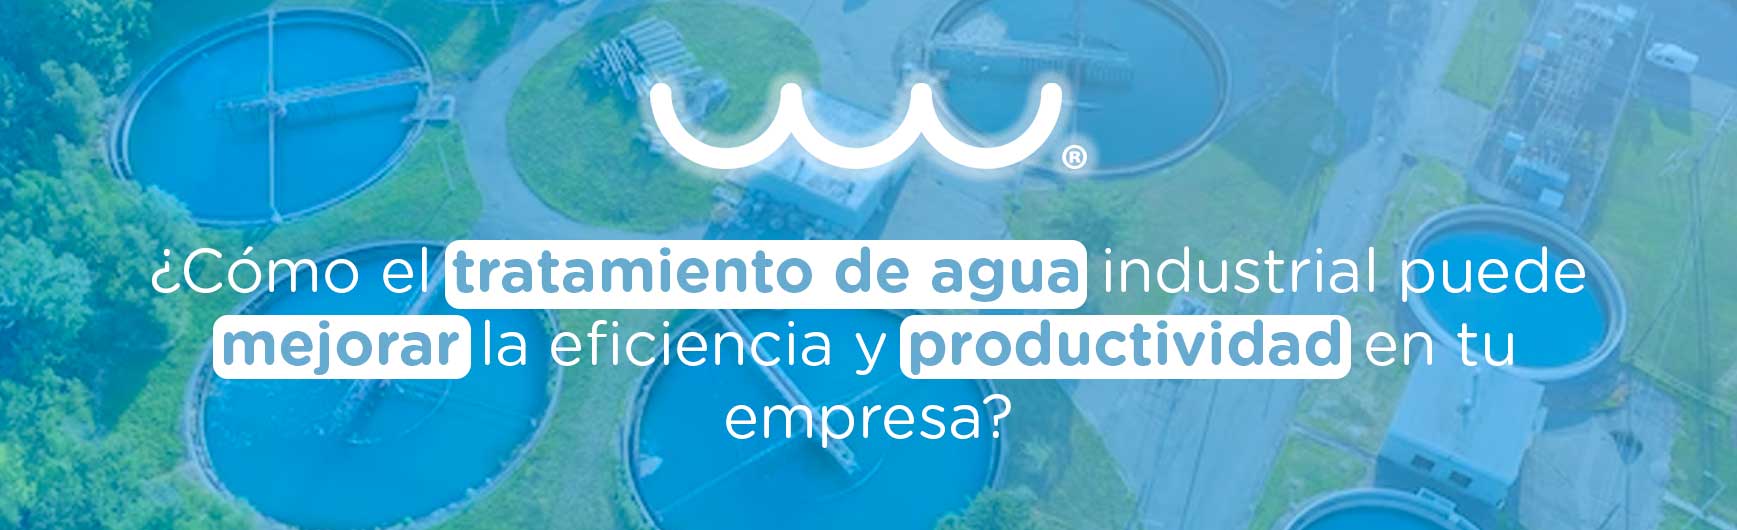 ¿Cómo el tratamiento de agua industrial puede mejorar la eficiencia y productividad en tu empresa?